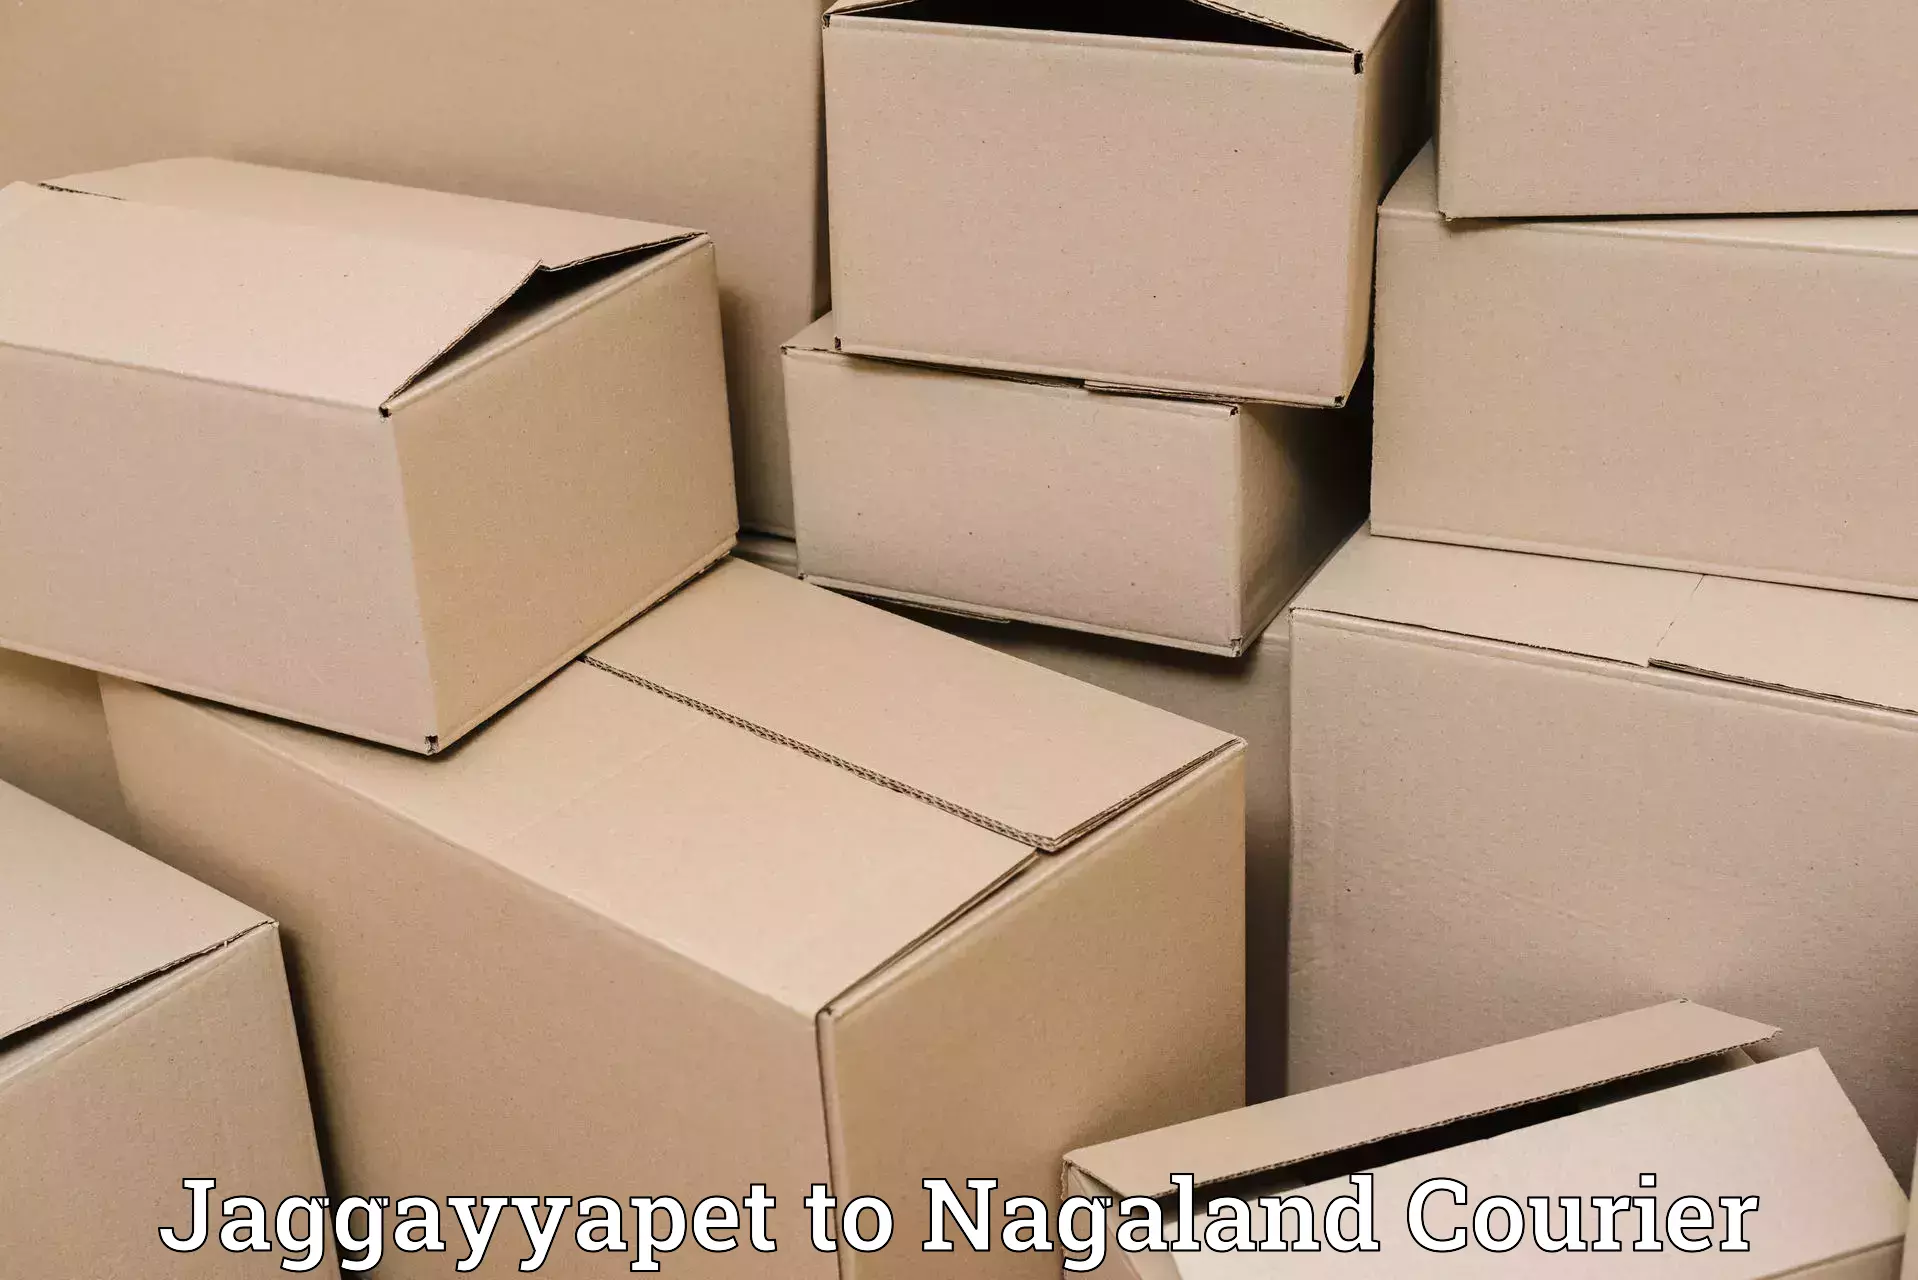 Affordable parcel service Jaggayyapet to Nagaland